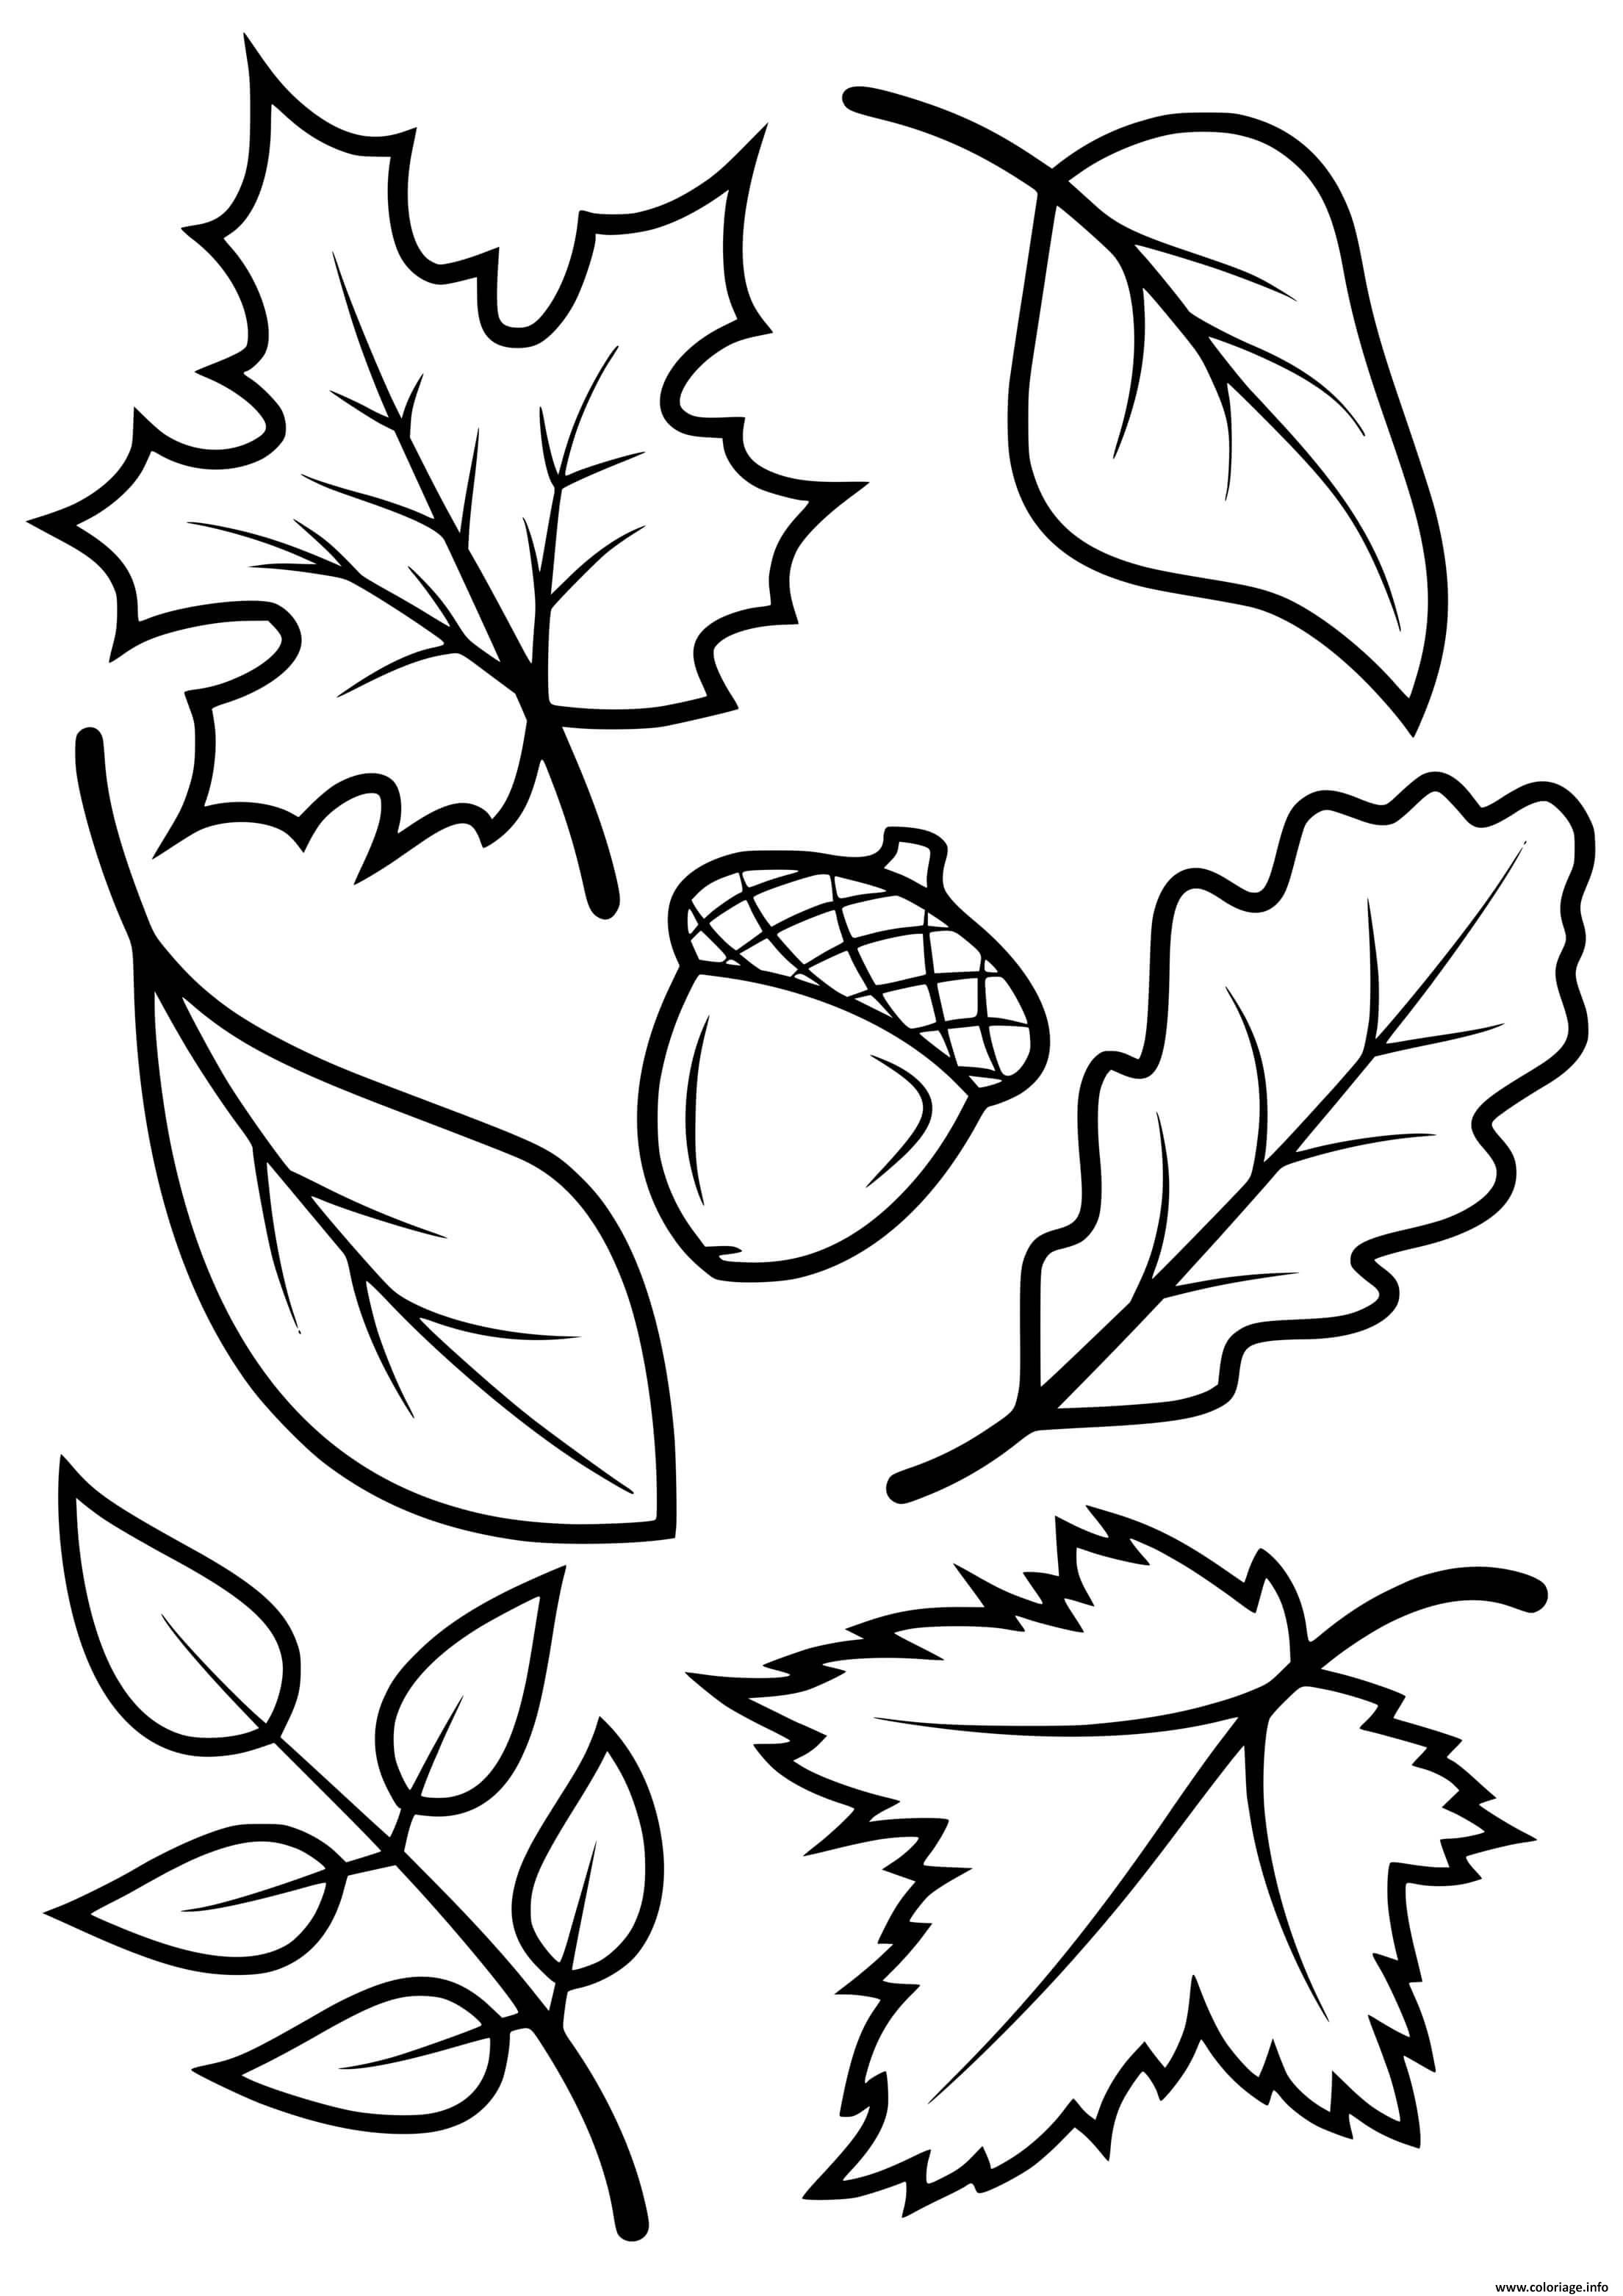 Dessin Feuille Automne Facile Coloriage feuilles automne arbres erable hetre chene - JeColorie.com